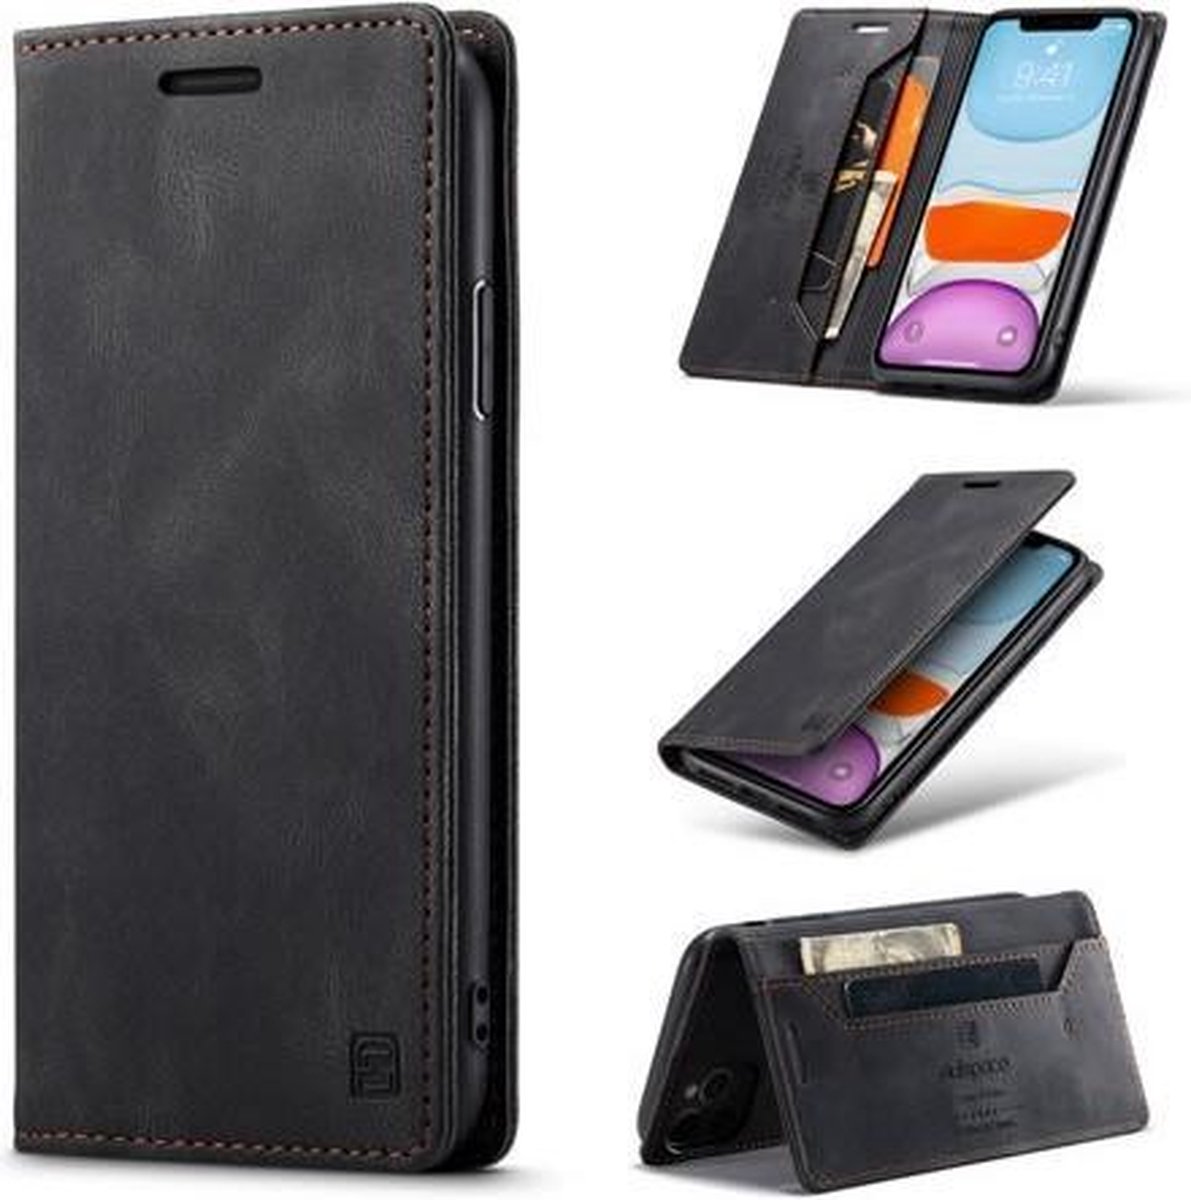 AutSpace - Hoesje geschikt voor iPhone 11 Pro Max - Wallet Book Case - Magneetsluiting - met RFID bescherming - Zwart